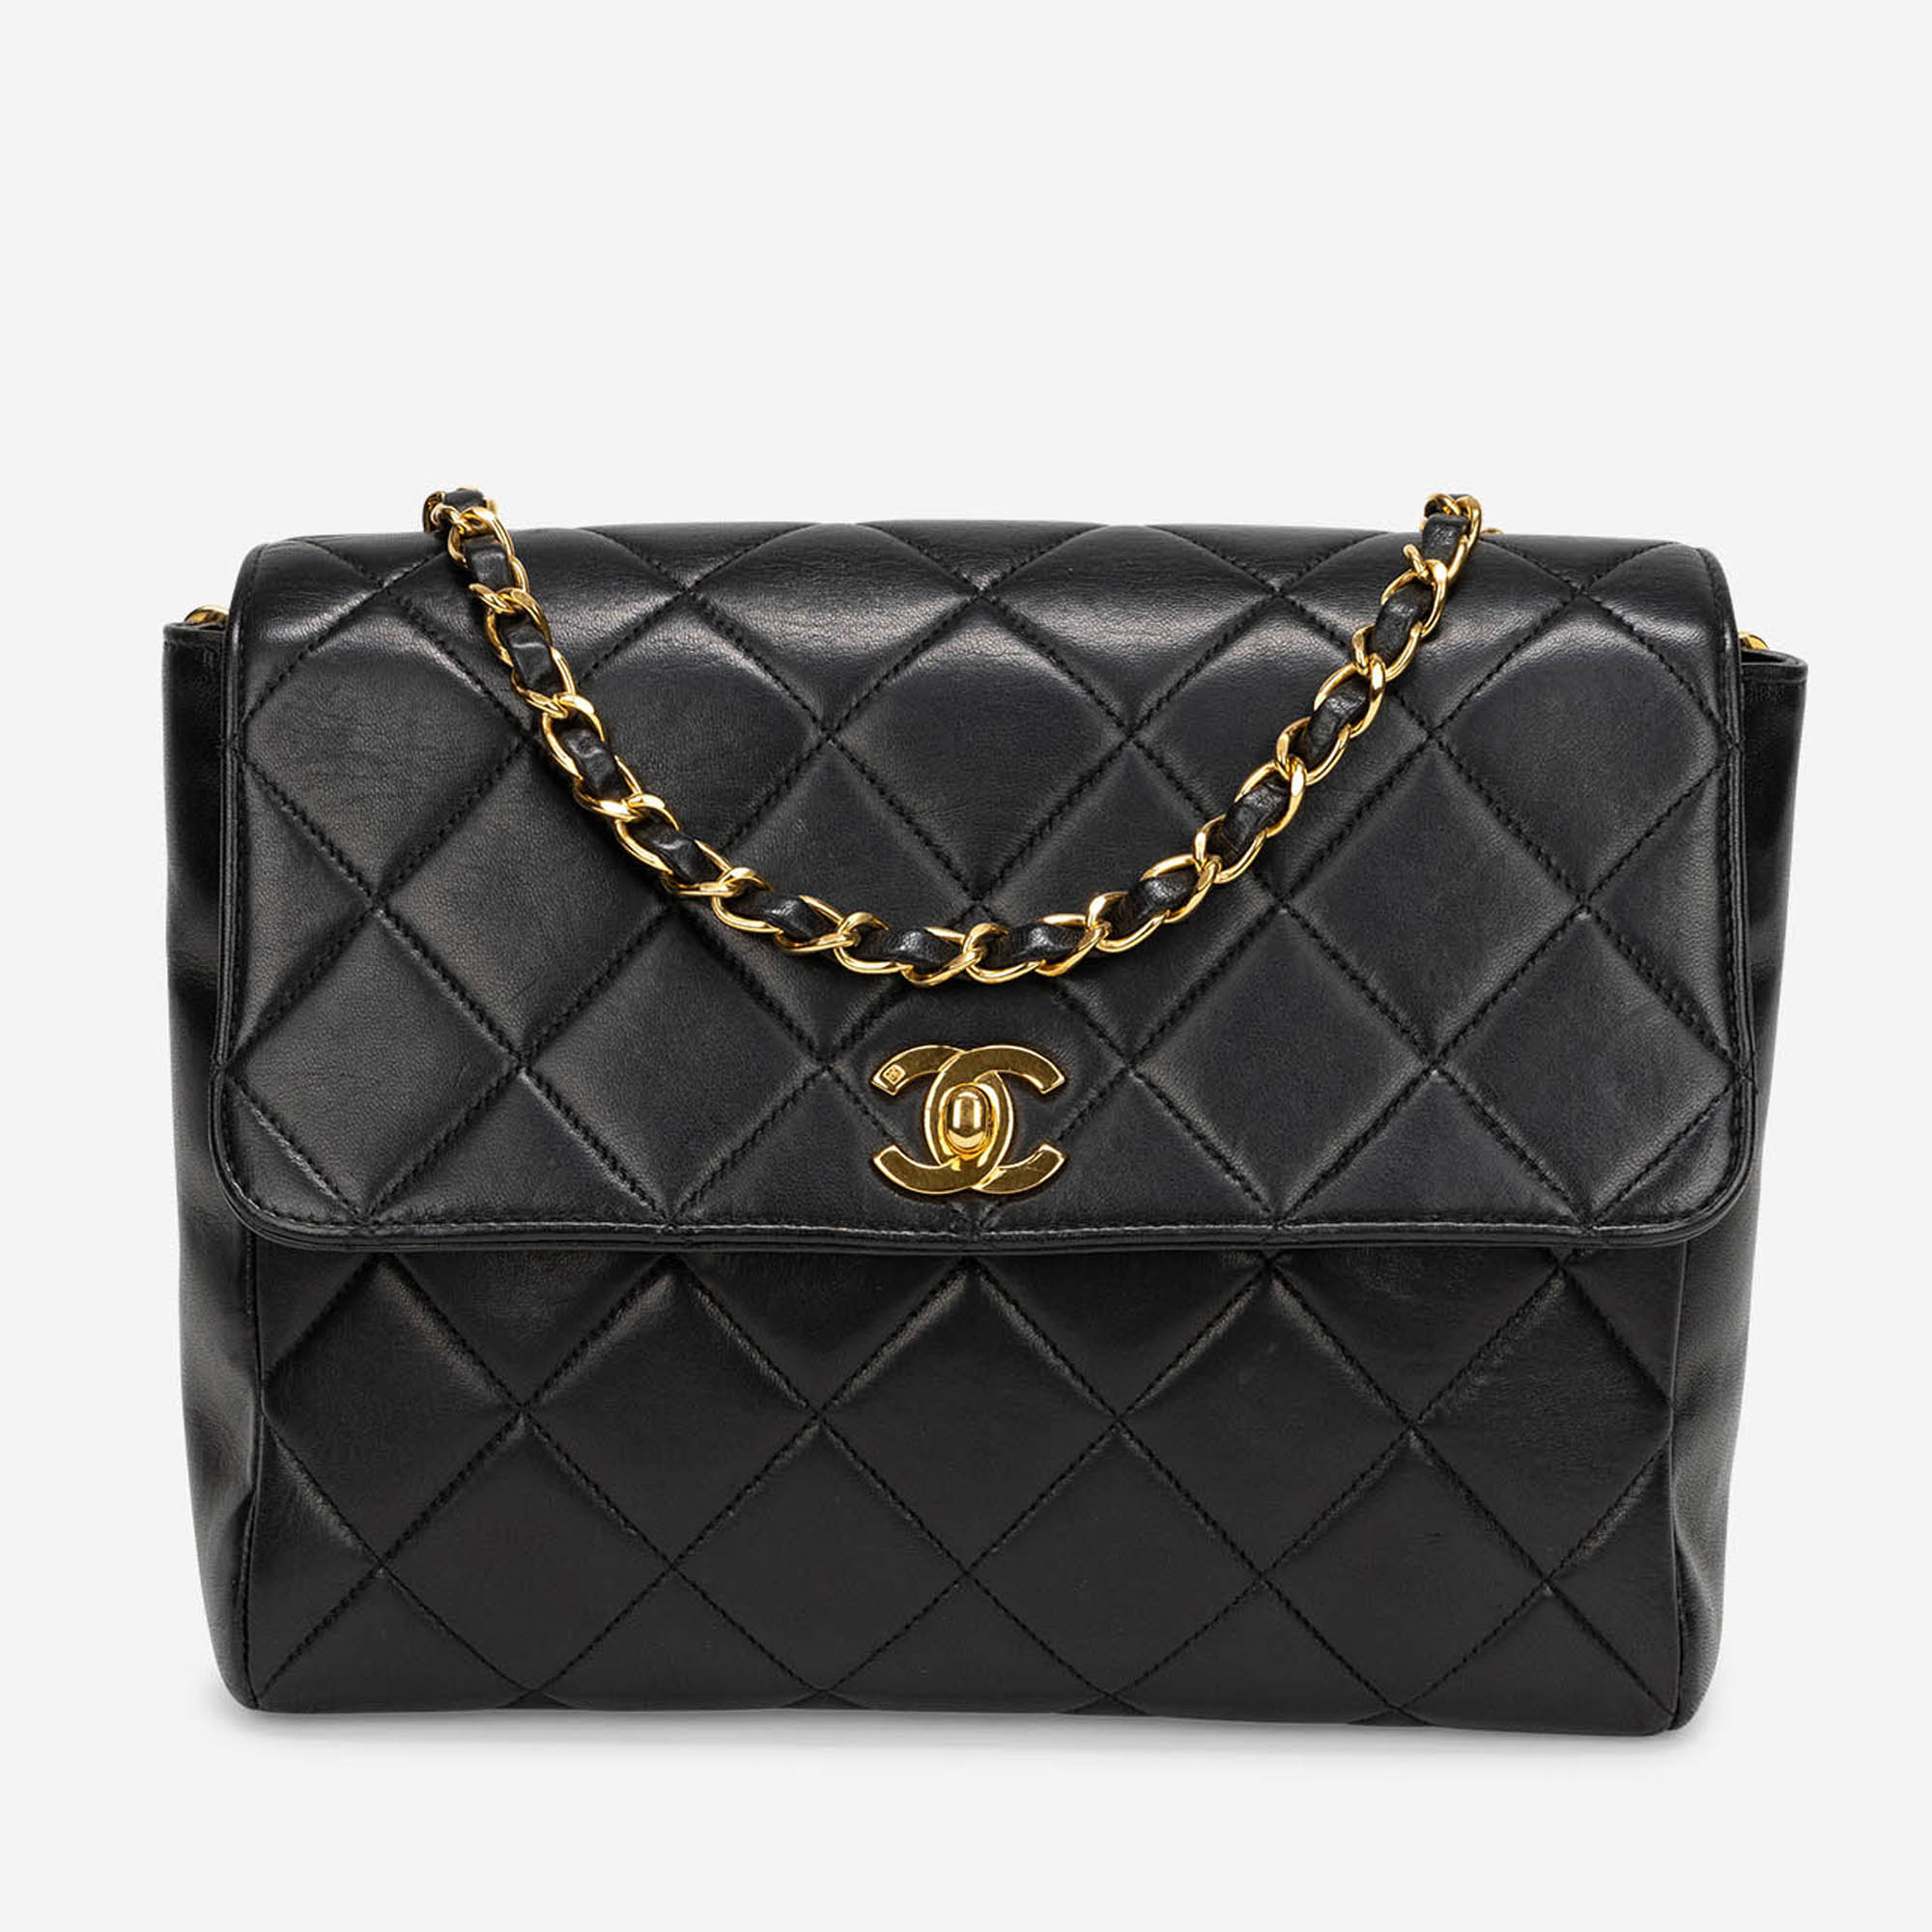 Gebrauchte Chanel Tasche Timeless Small Lammleder Schwarz Schwarz | Verkaufen Sie Ihre Designer-Tasche auf Saclab.com